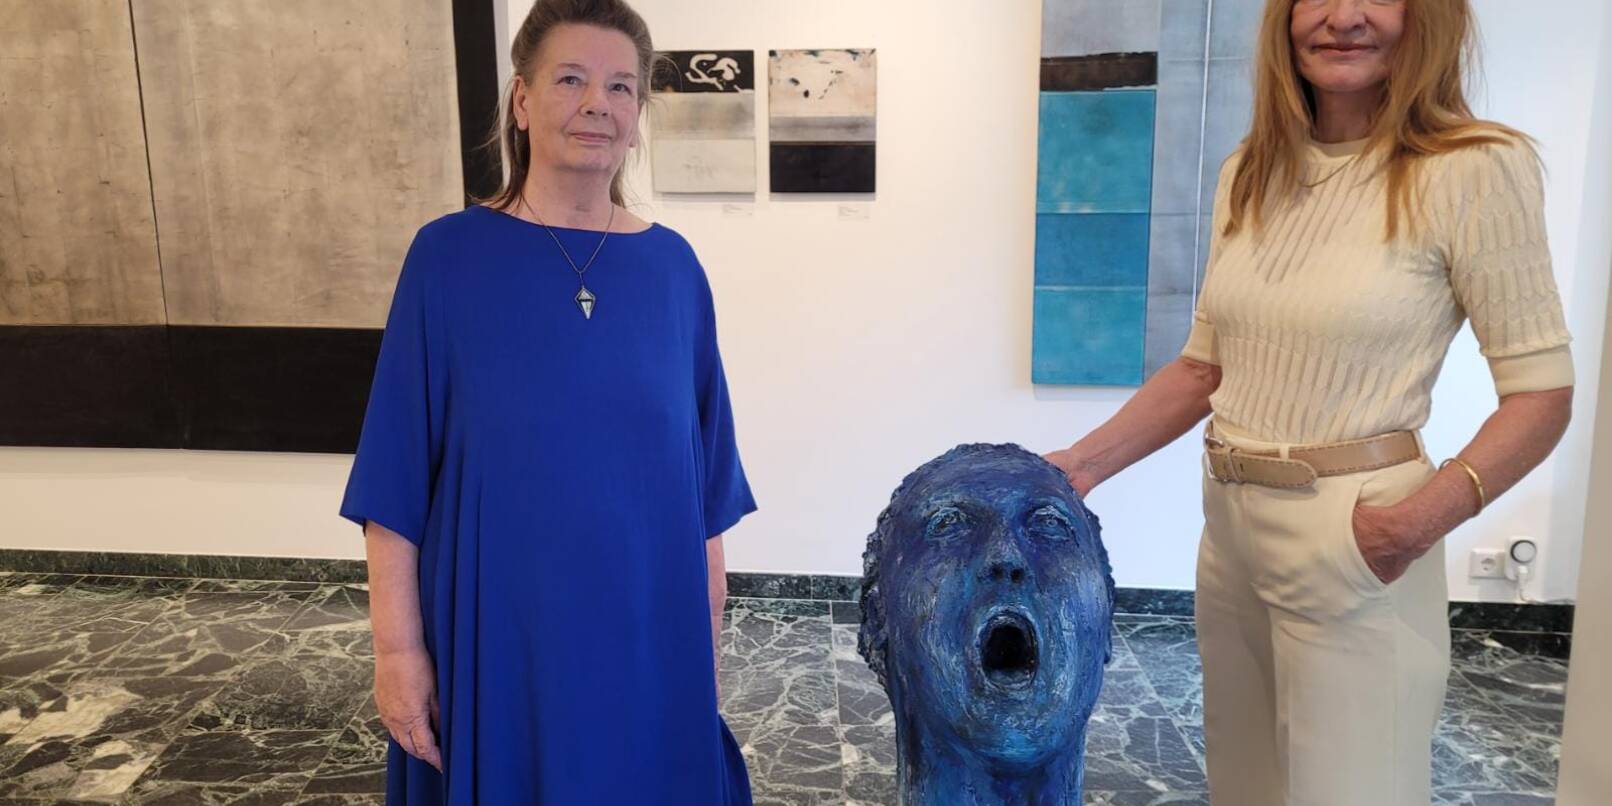 Der überlebensgroße Kopf aus Gips, dessen Mund und Augen vor Entsetzen zum Schrei aufgerissen sind, ist ein Werk von Dagmar Vogt (rechts). Daneben zeigt die Galerie Klüber Gemälde von Ulla Ströhmann (links).